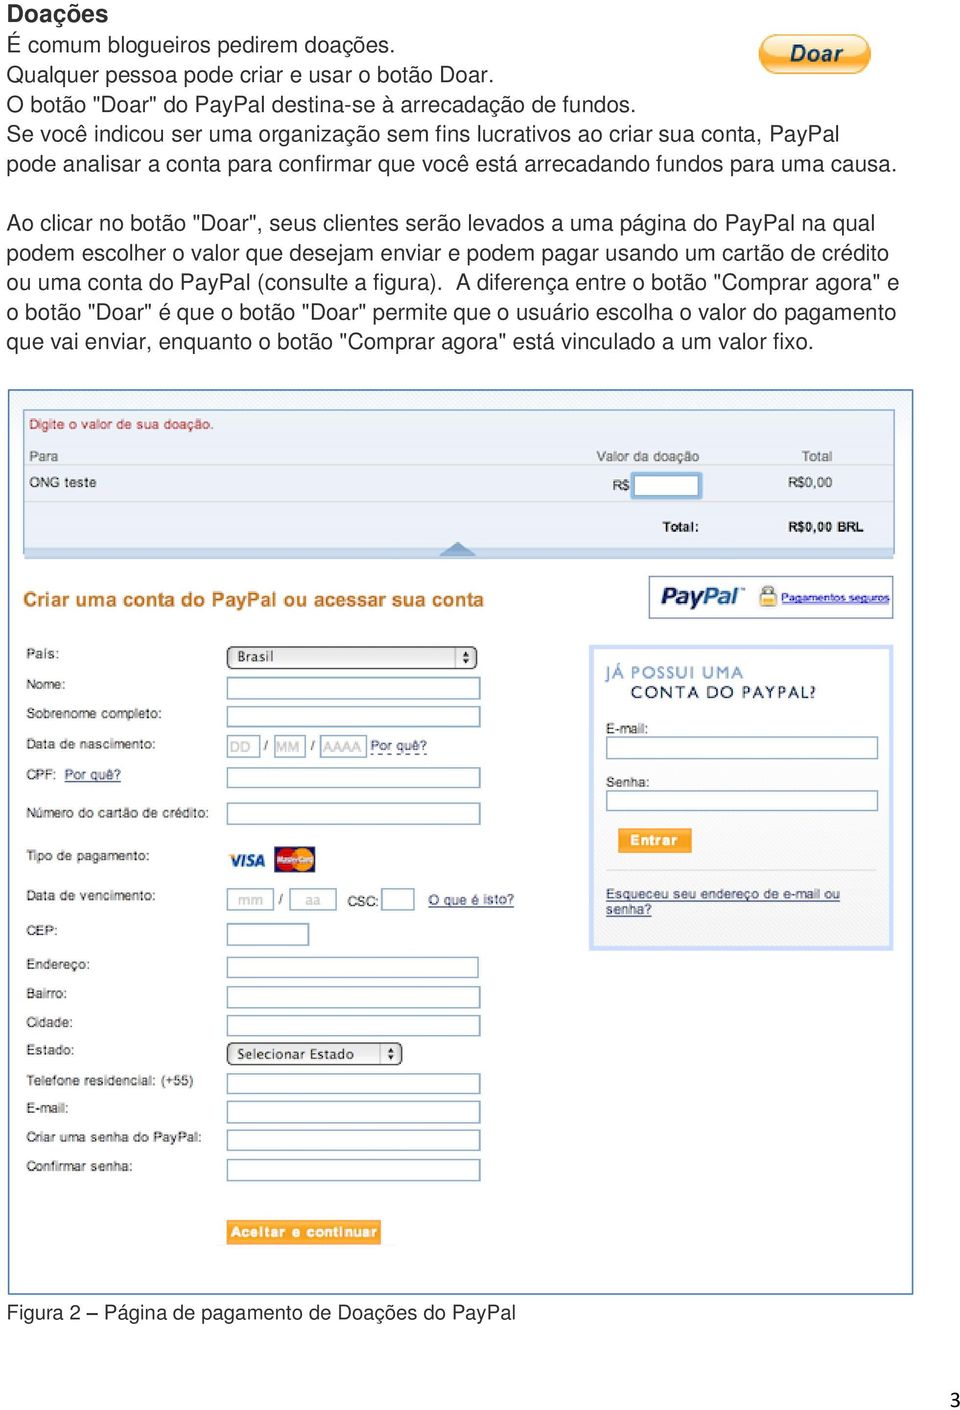 Ao clicar no botão "Doar", seus clientes serão levados a uma página do PayPal na qual podem escolher o valor que desejam enviar e podem pagar usando um cartão de crédito ou uma conta do PayPal